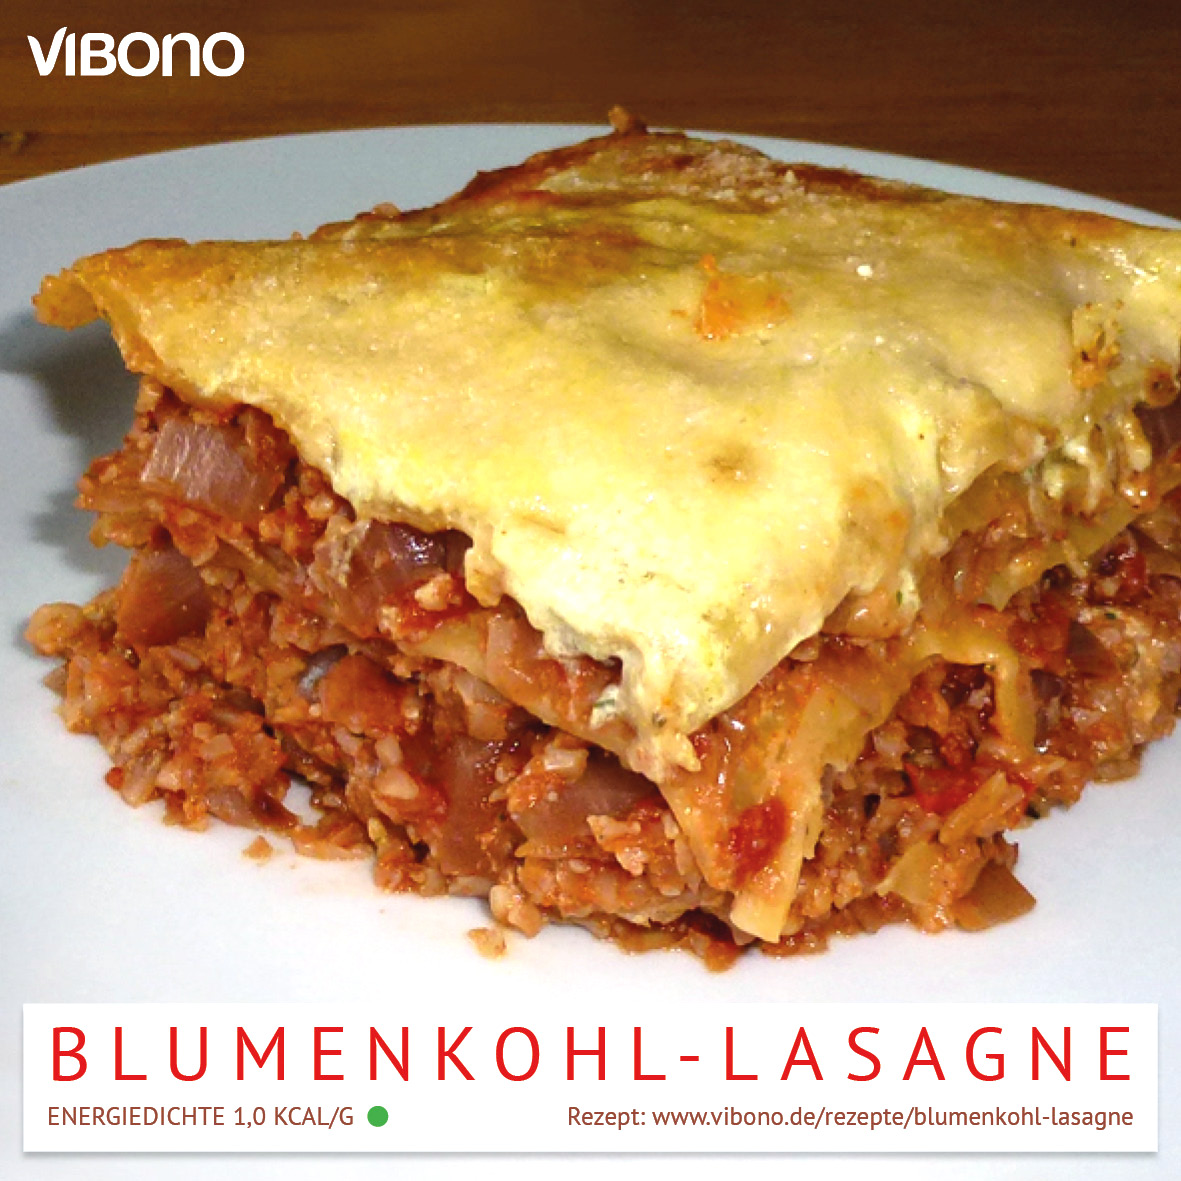 Blumenkohl-Lasagne | Vibono